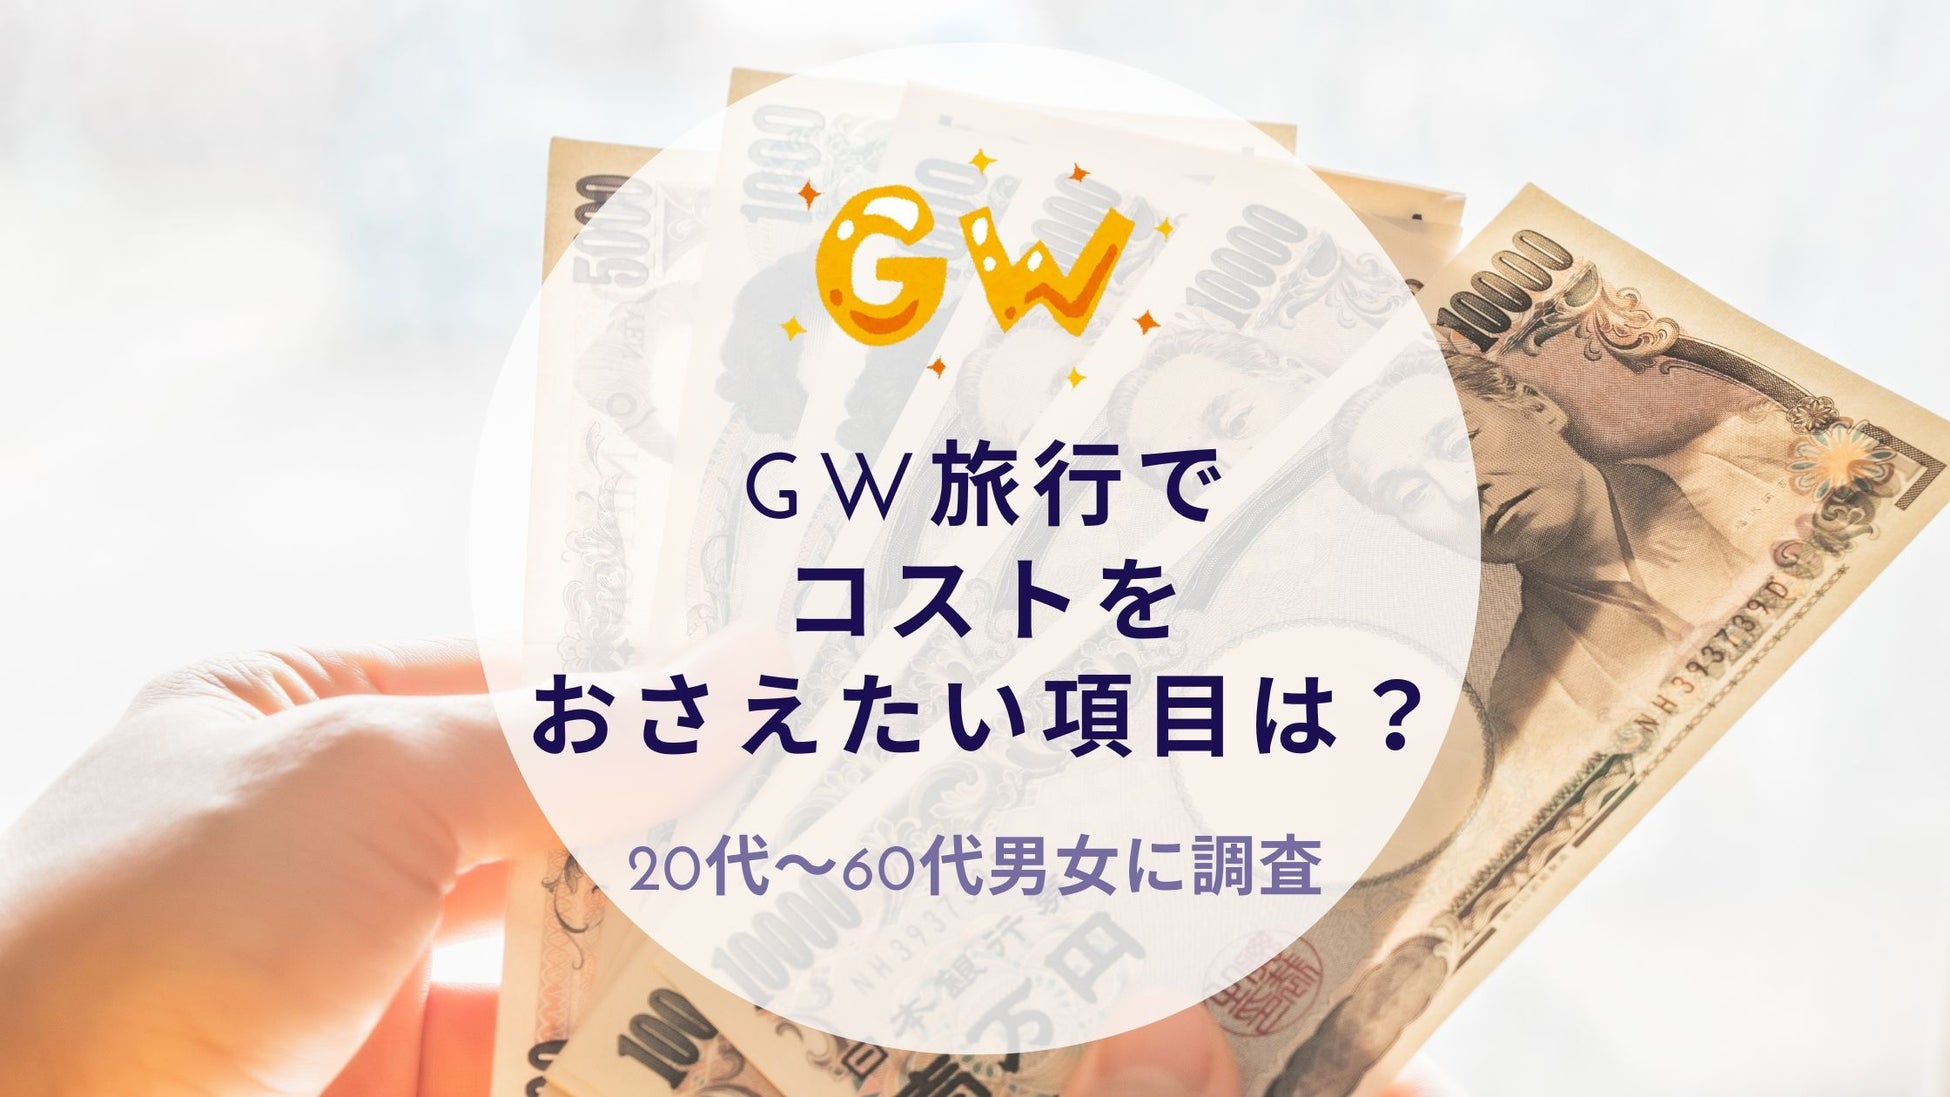 GW旅行でコストをおさえたい項目を調査｜沖縄旅行＆リゾート・ホテル情報サイトがアンケート